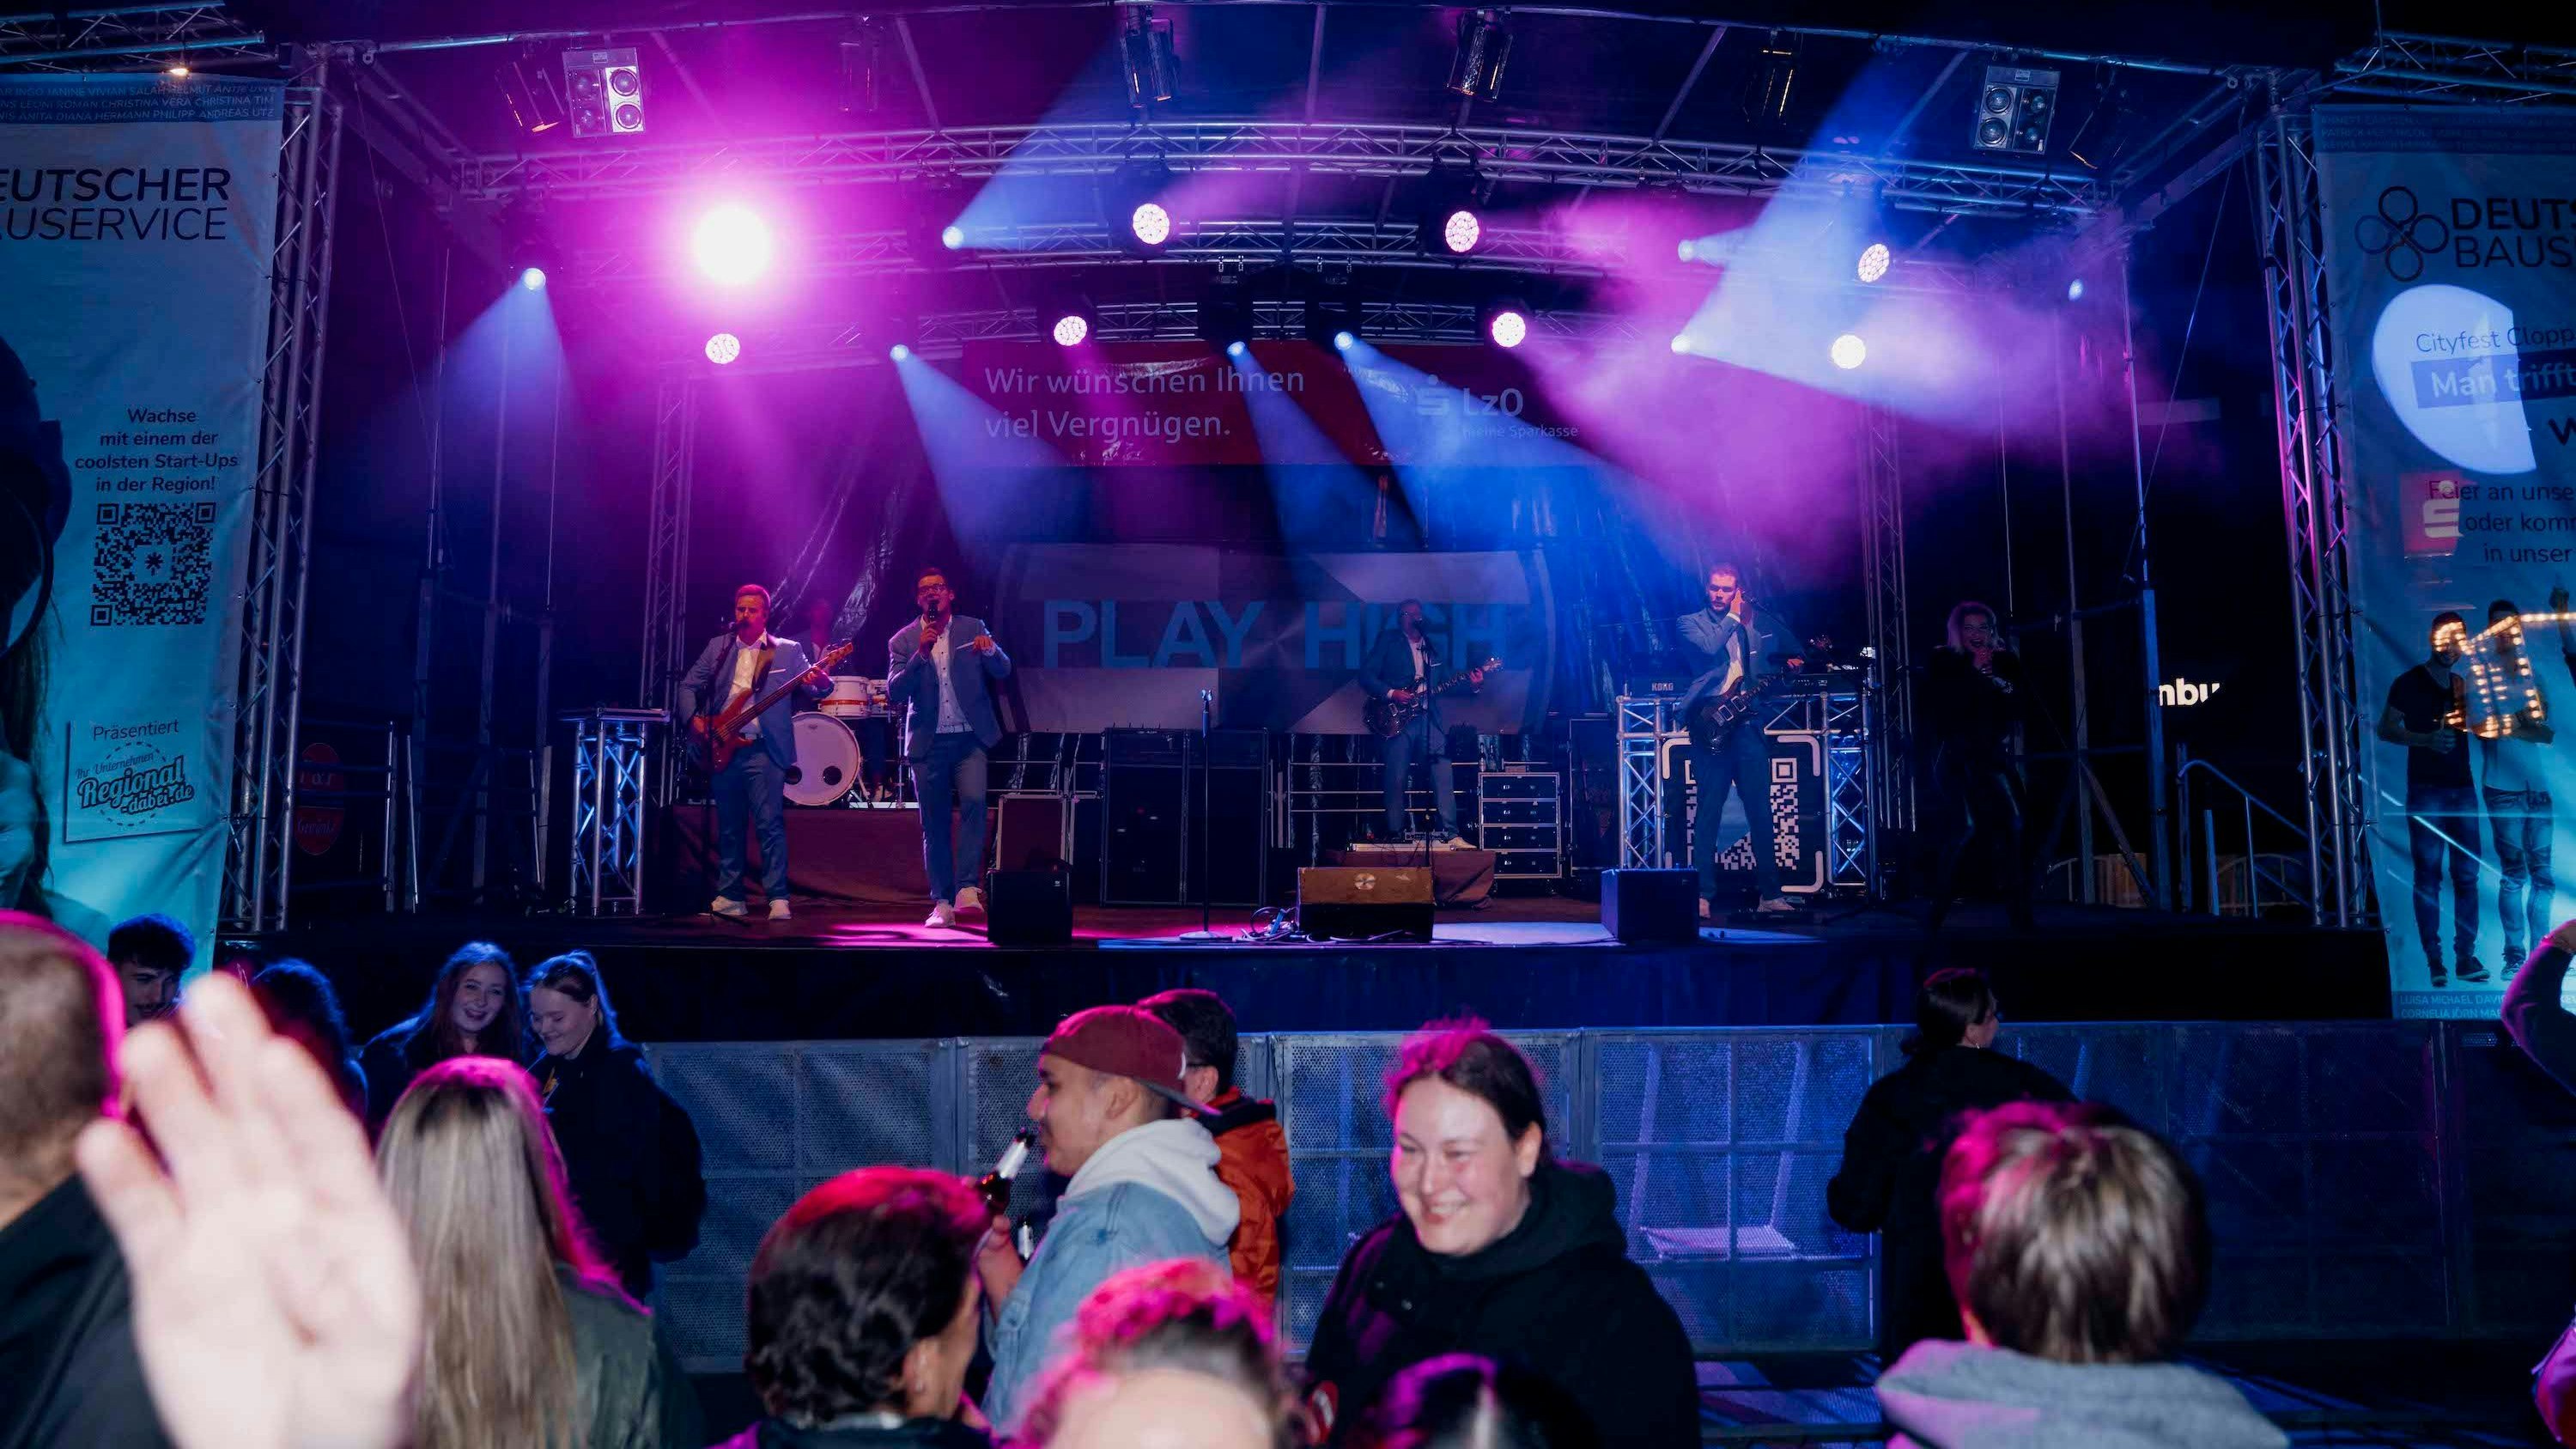 Bühnenprogramm: Die Bands und DJs kamen gut bei den Besuchern an. Foto: Mos Bild Bild Fotografie - Mo Samir